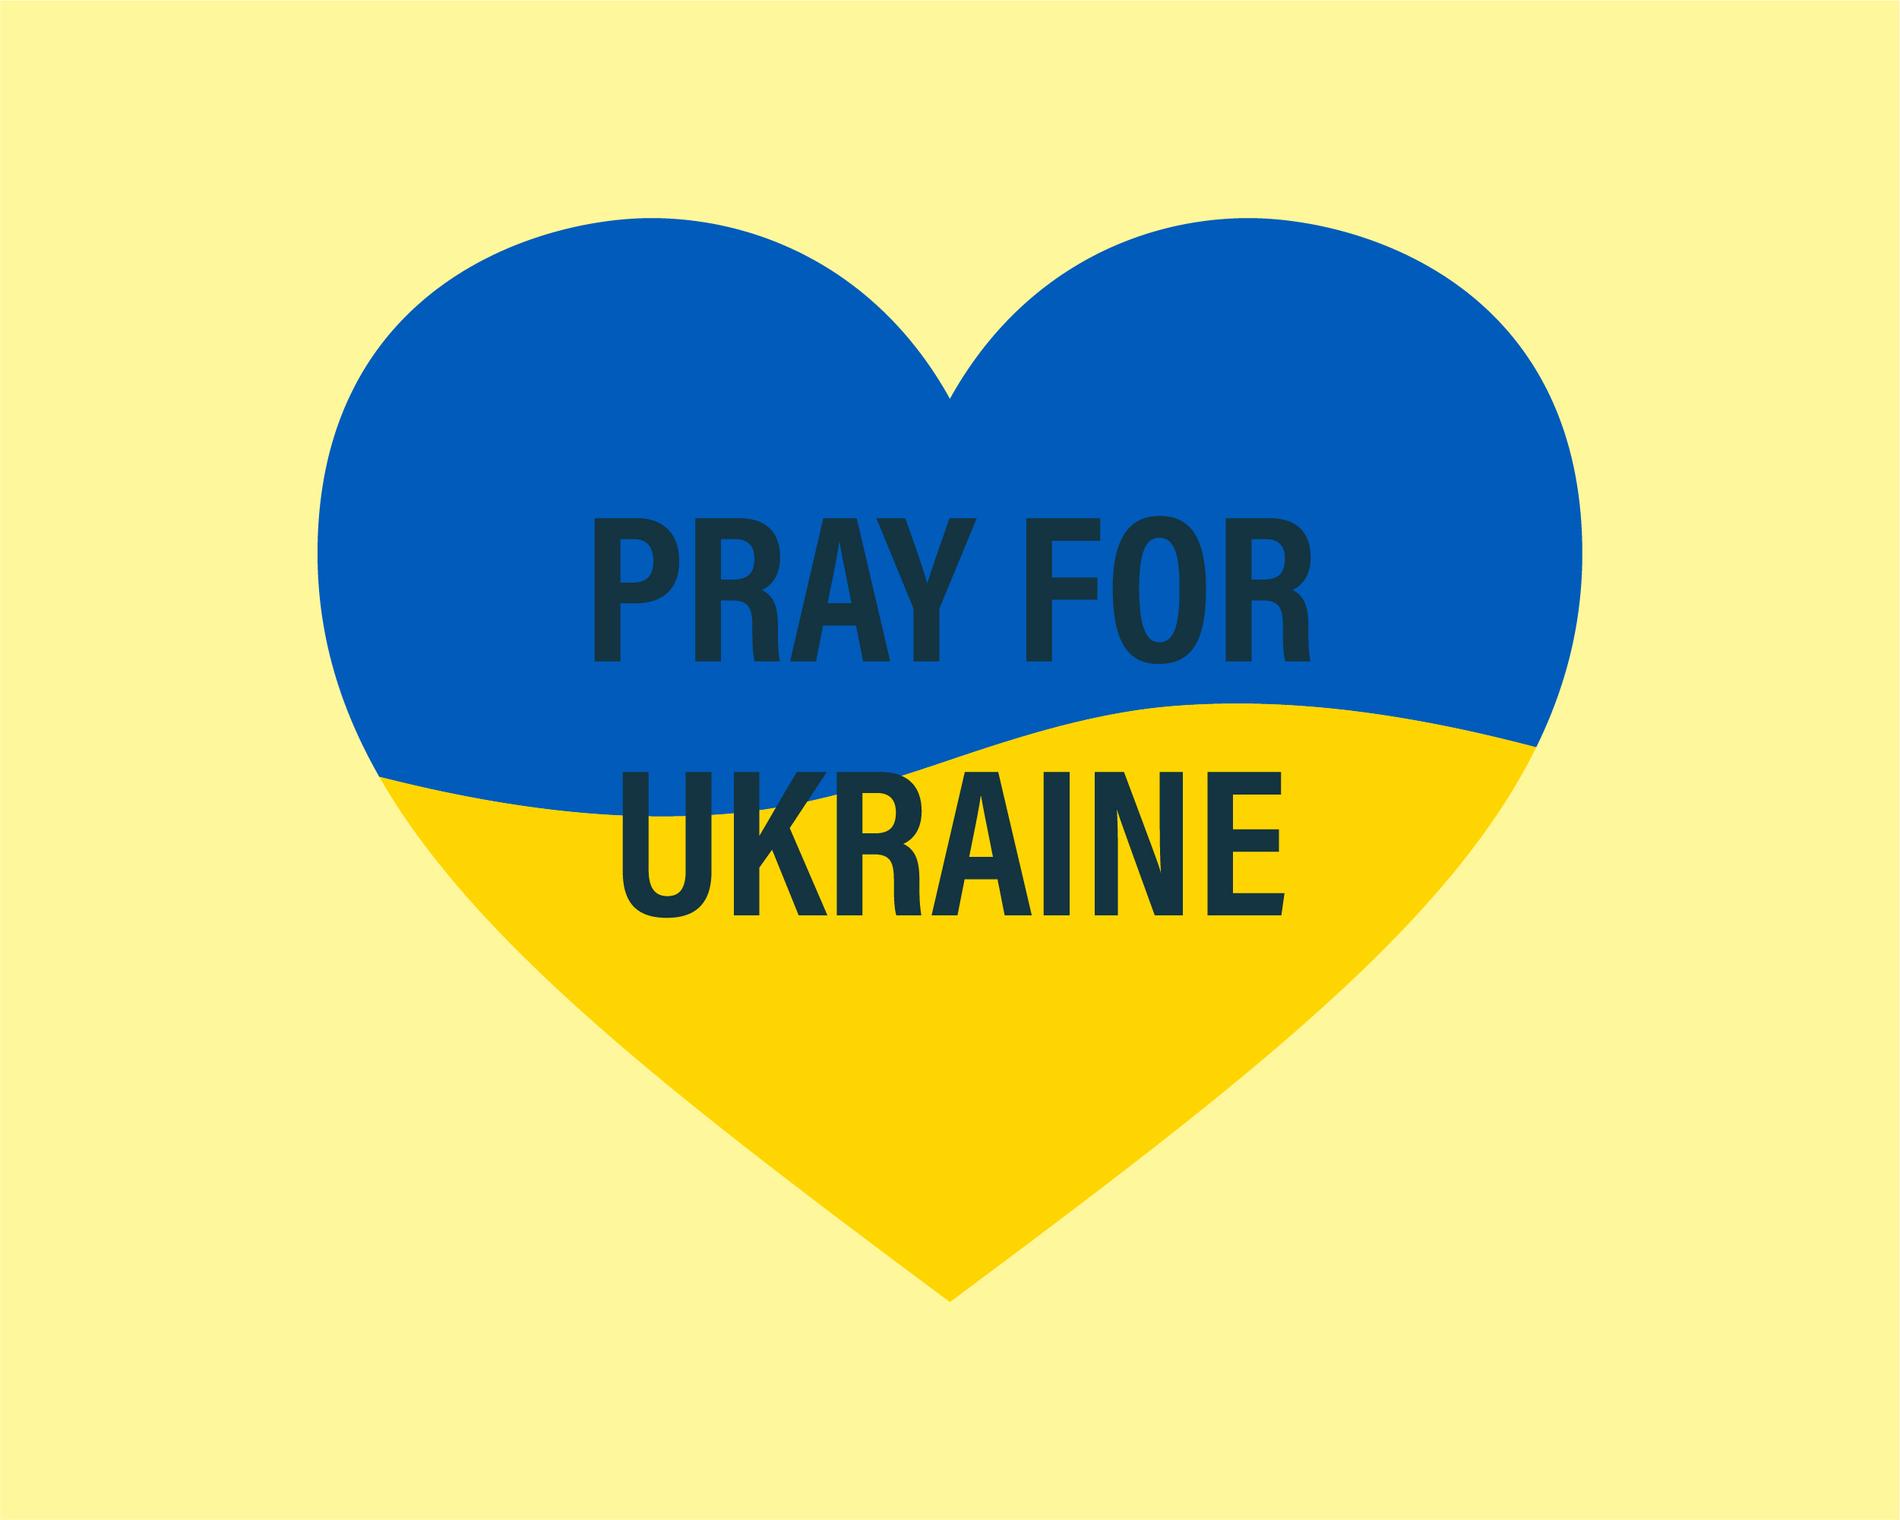 heile verda ber Ukraina, og mange kvar dag mellom klokka 1600 og 1700.